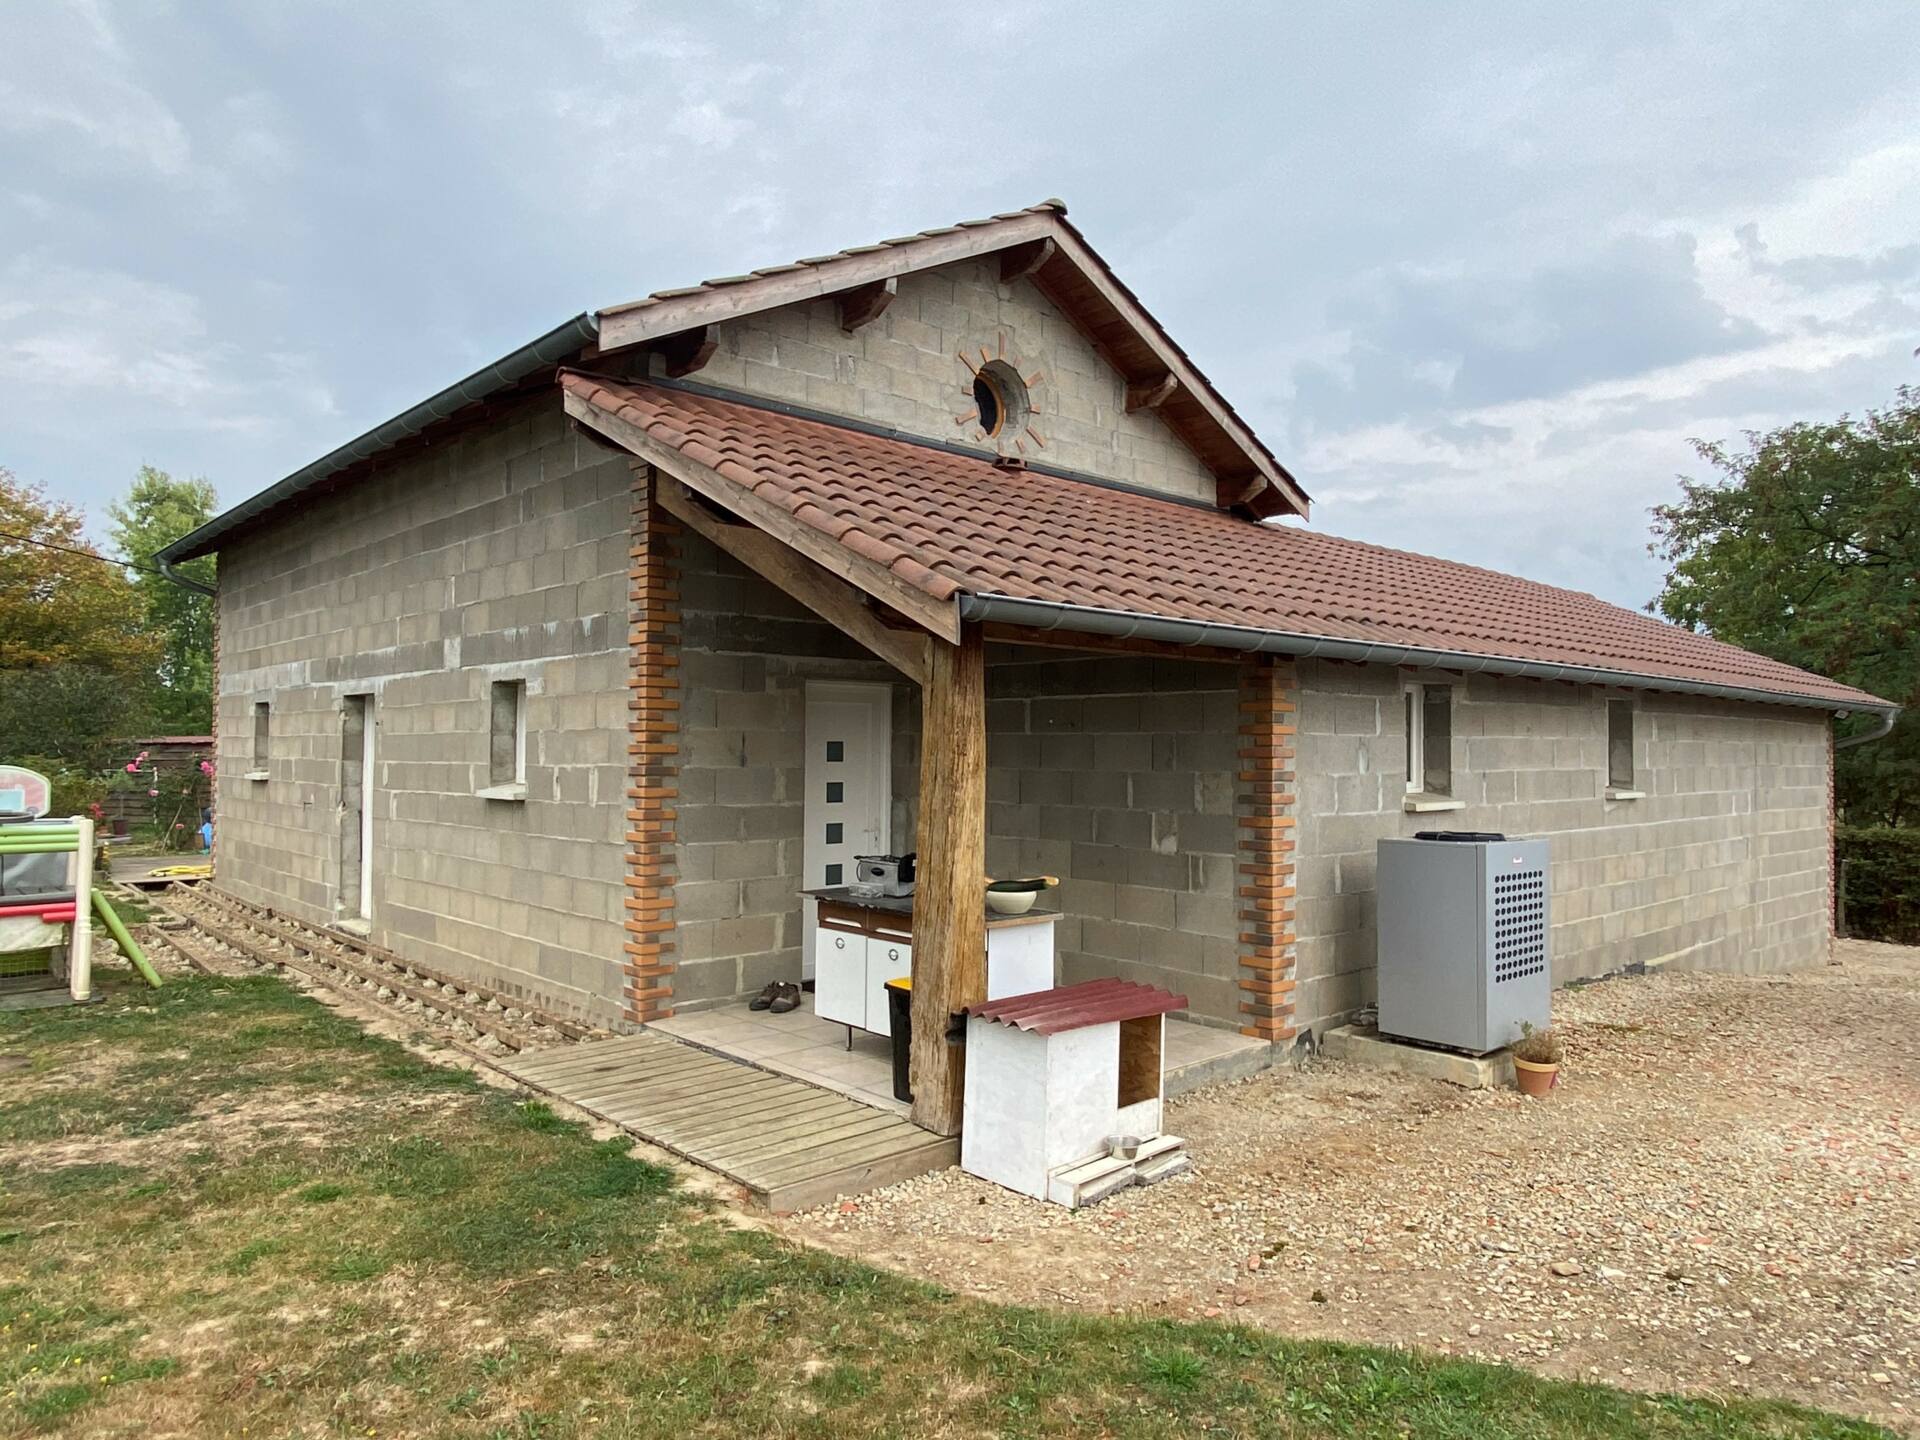 Rénovation de Façade aux alentours de Bourg en Bresse dans l'Ain